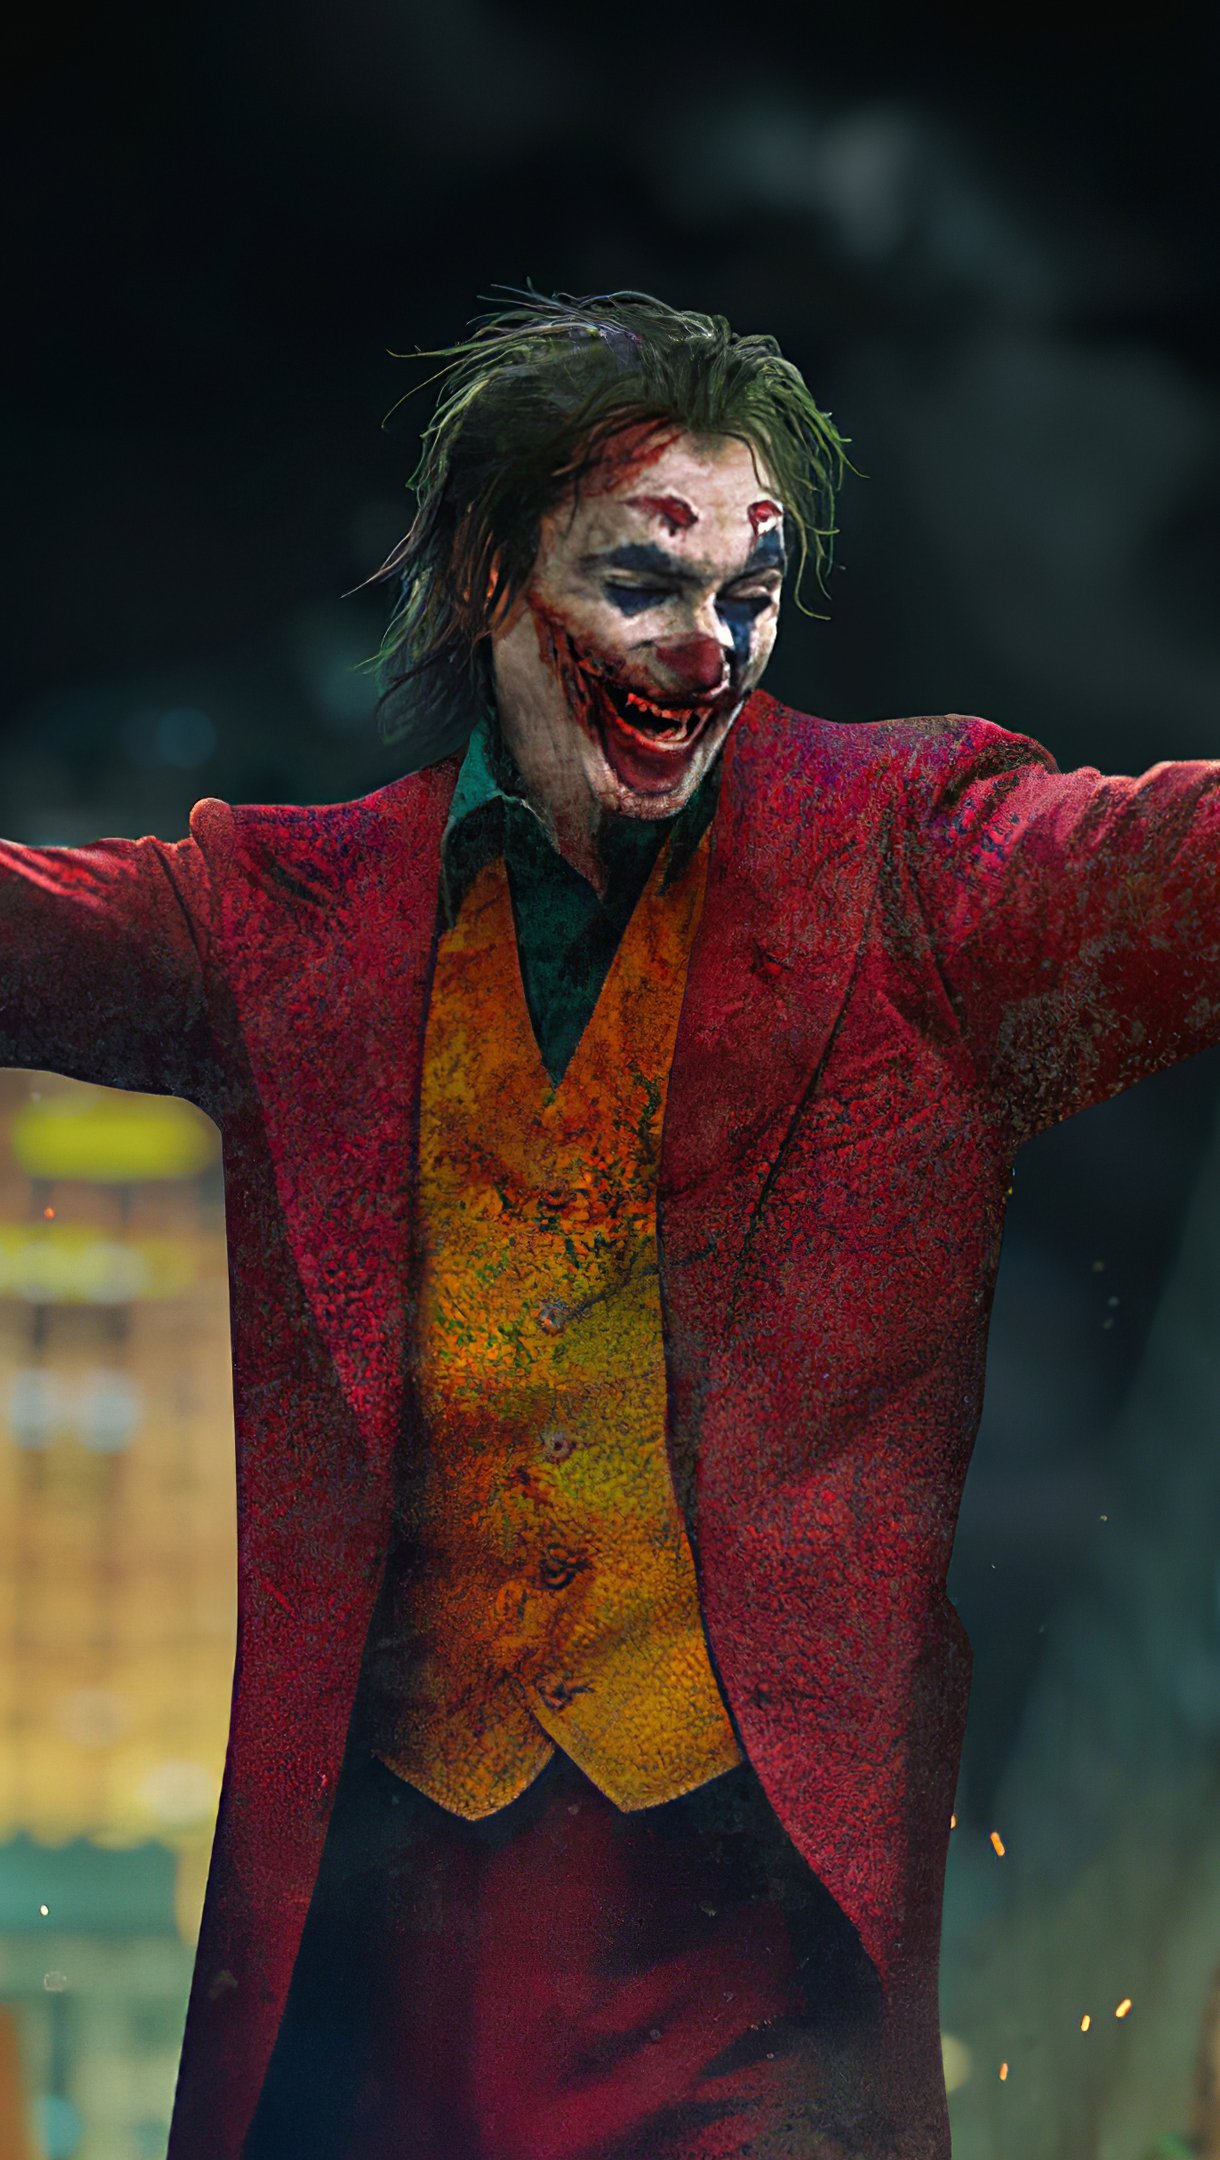 Joker with open arms Wallpaper 4k Ultra HD ID:5171